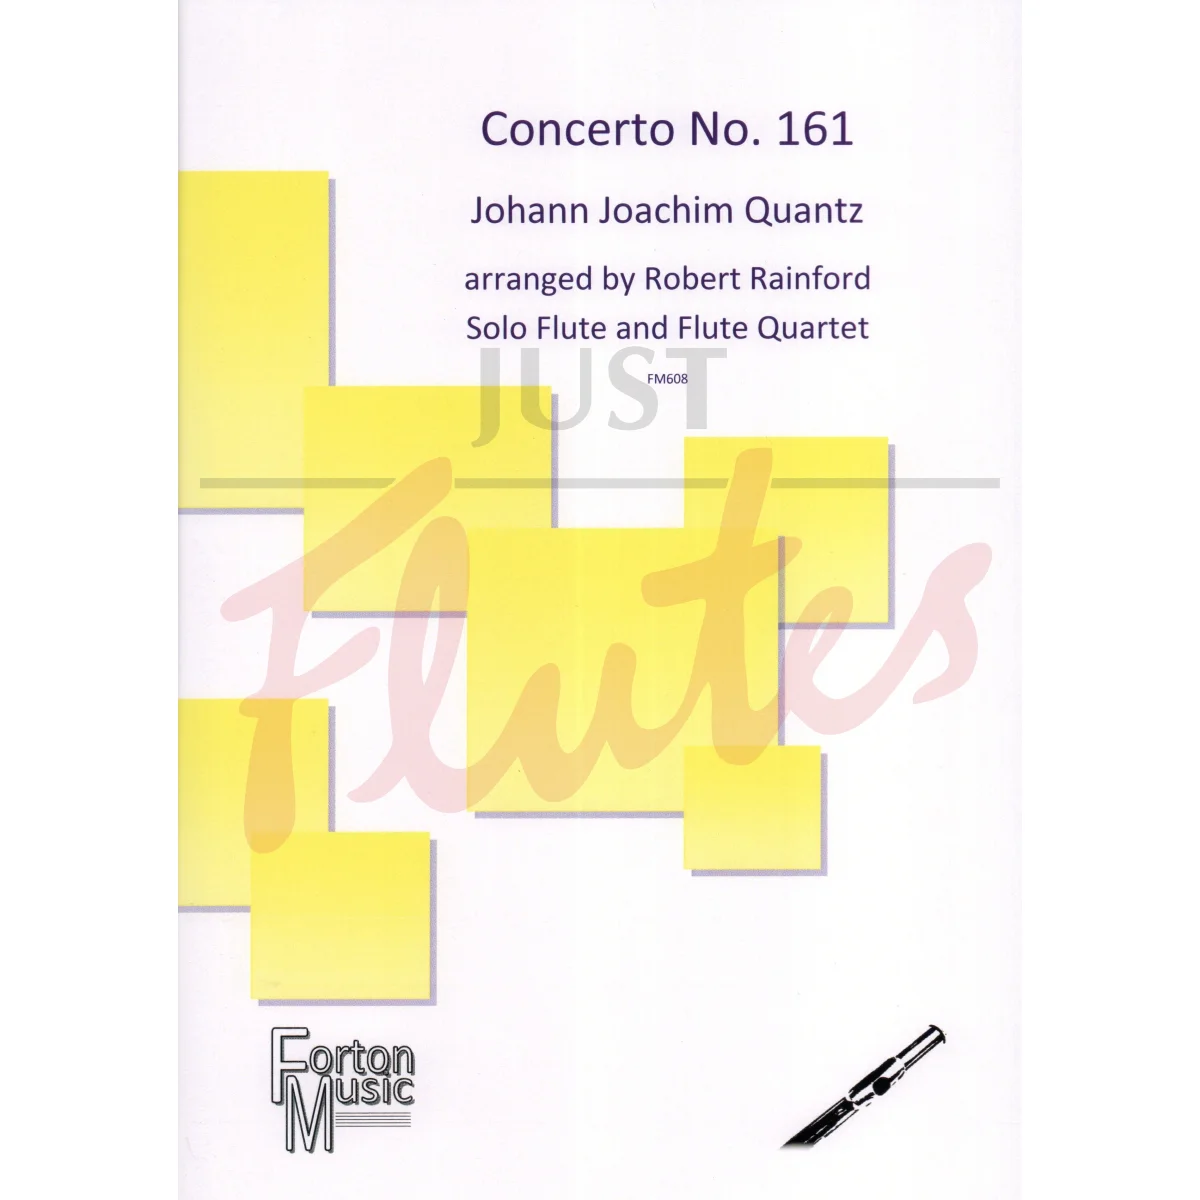 Concerto No. 161 for Solo Flute and Flute Quartet